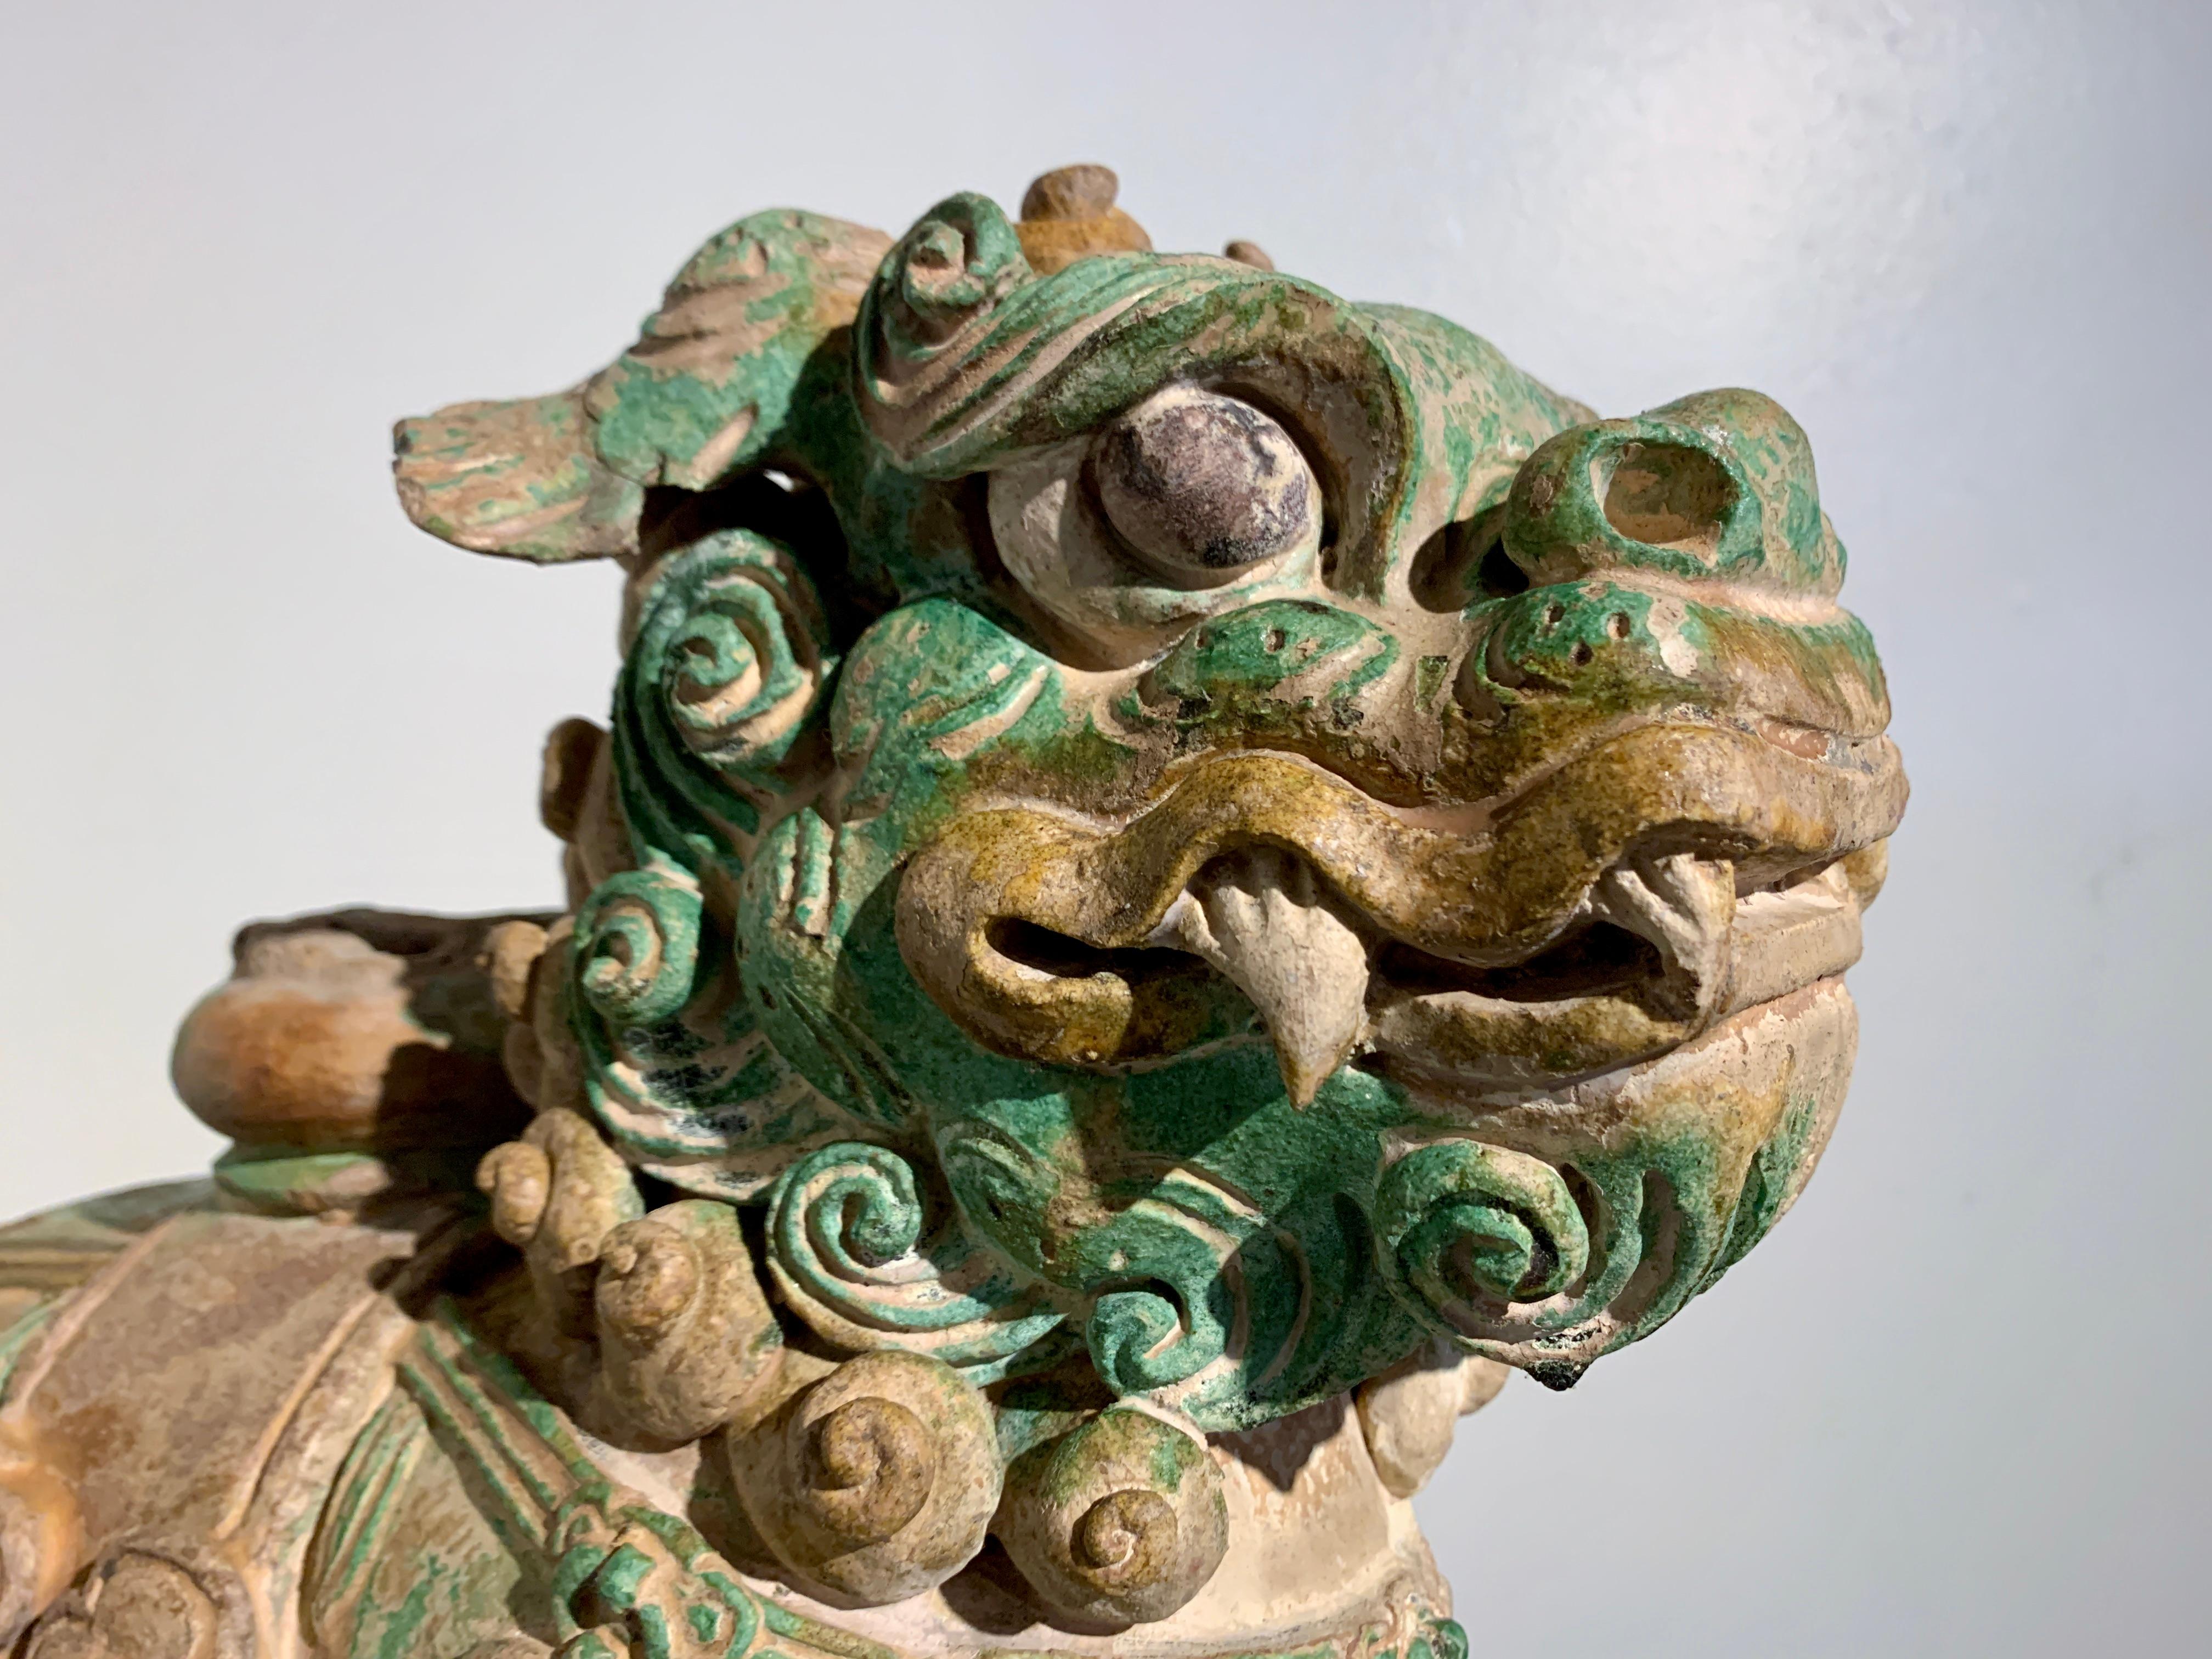 Eine fantastische chinesische Sancai glasierte Fliese himmlischen Wächter Löwe, späten Ming-Dynastie (1368 - 1644), ca. Ende des 16. Jahrhunderts, China.

Der charmante und wilde Löwe ist in Bewegung dargestellt und schreitet auf einem rechteckigen